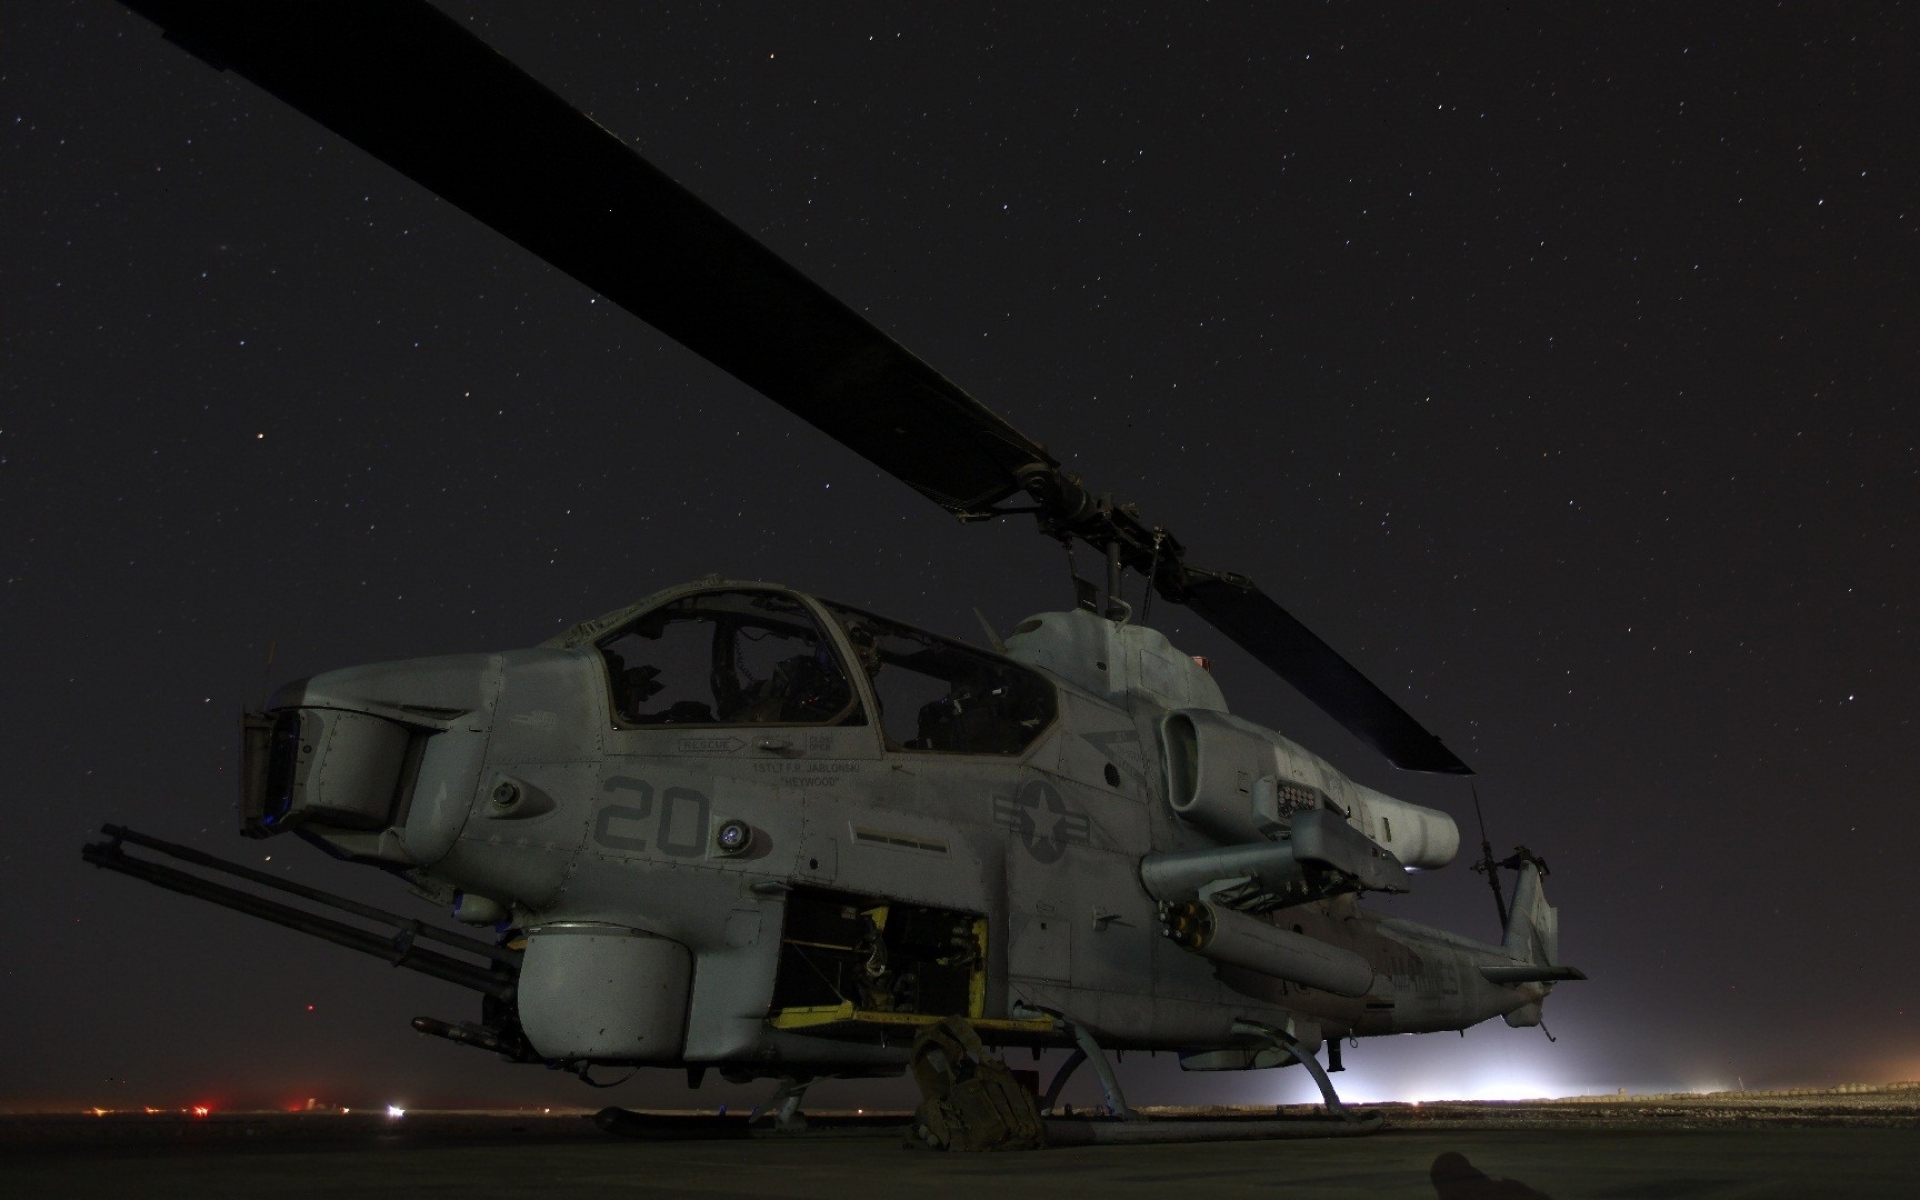 Картинки Ах-1 кобра, вертолет, небо, ночь фото и обои на рабочий стол